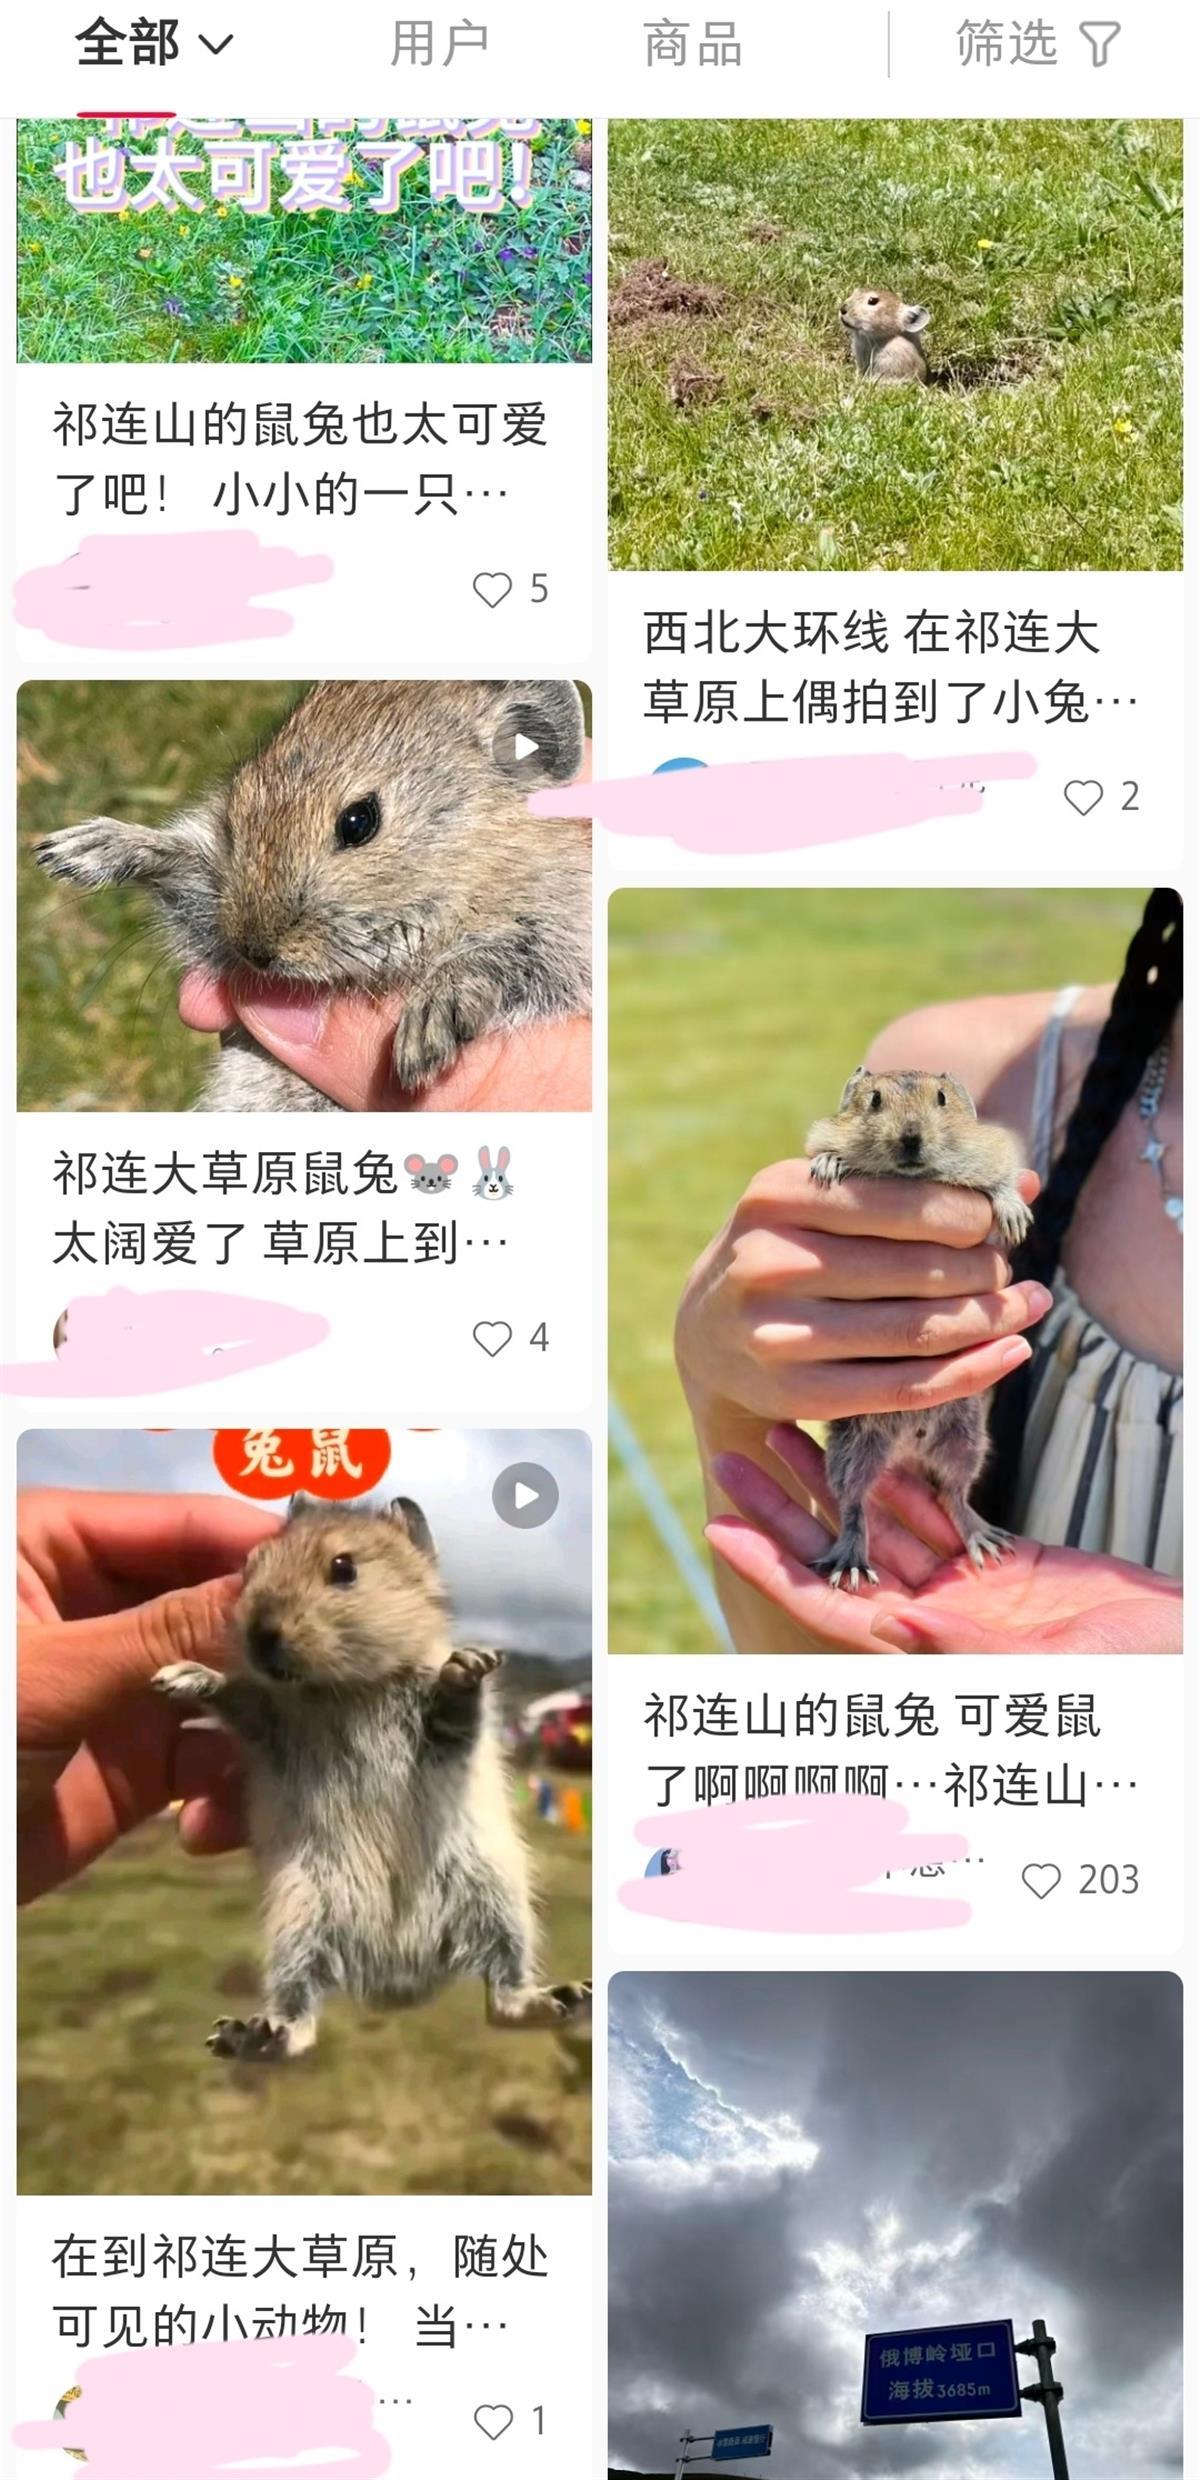 祁连山草原游客手抓鼠兔拍照，疾控部门提醒危险